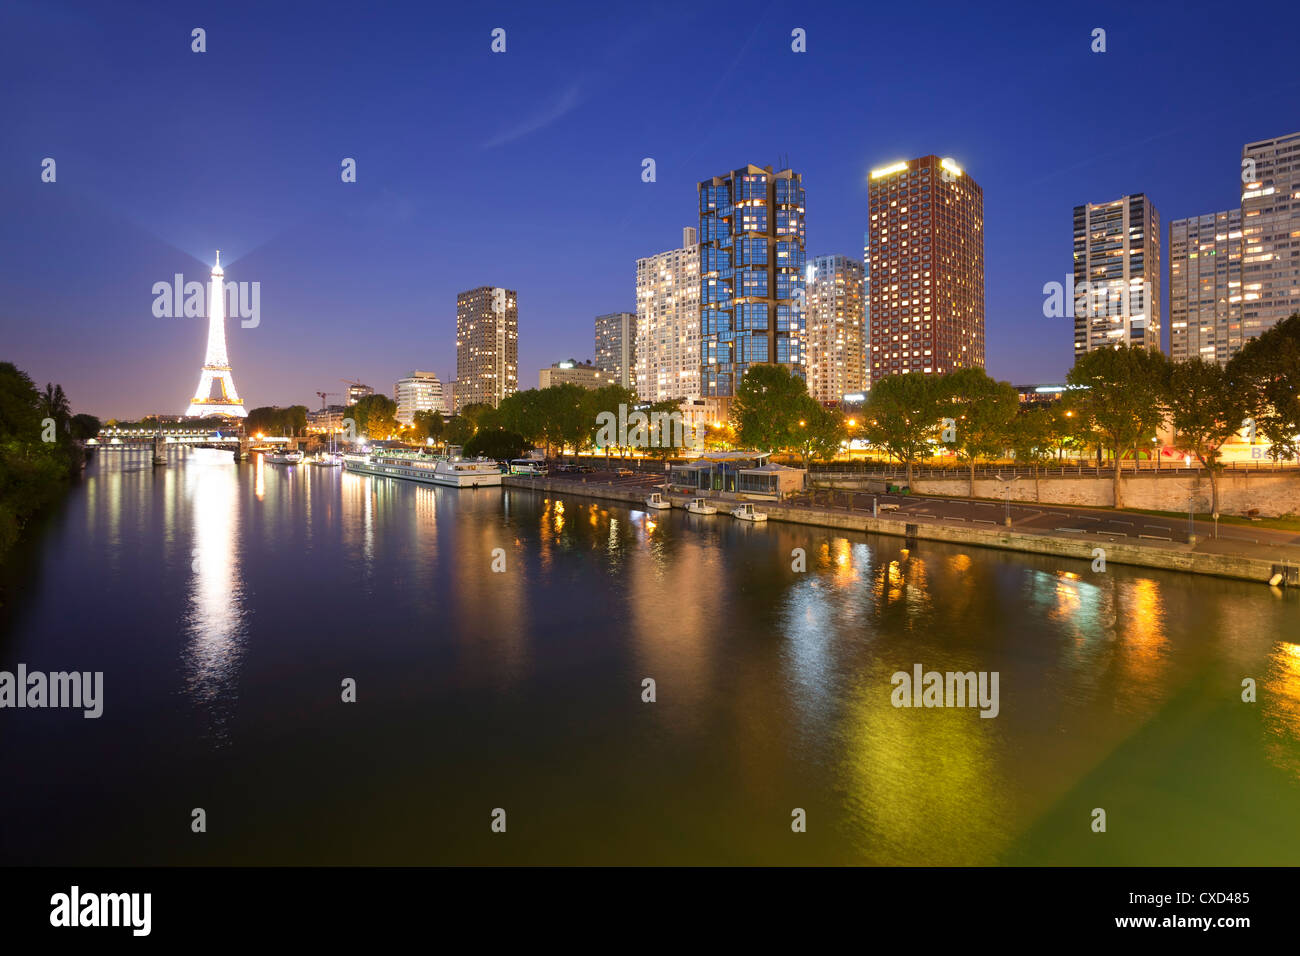 Vue de nuit sur la Seine aux immeubles de grande hauteur sur la rive gauche, et de la Tour Eiffel, Paris, France, Europe Banque D'Images